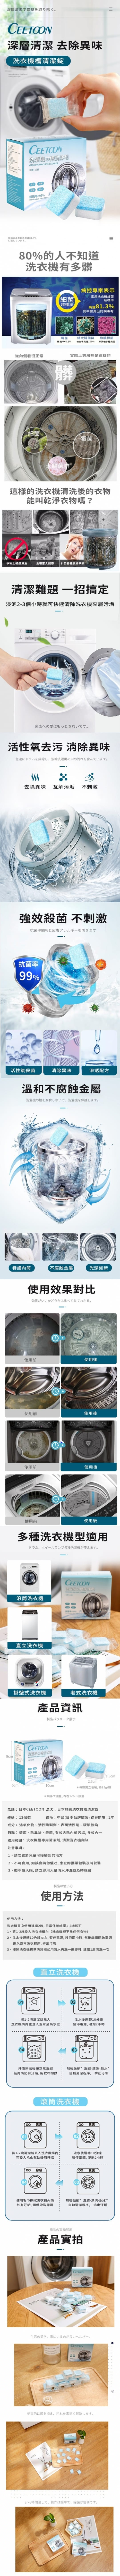 日本熱銷洗衣機槽清潔錠